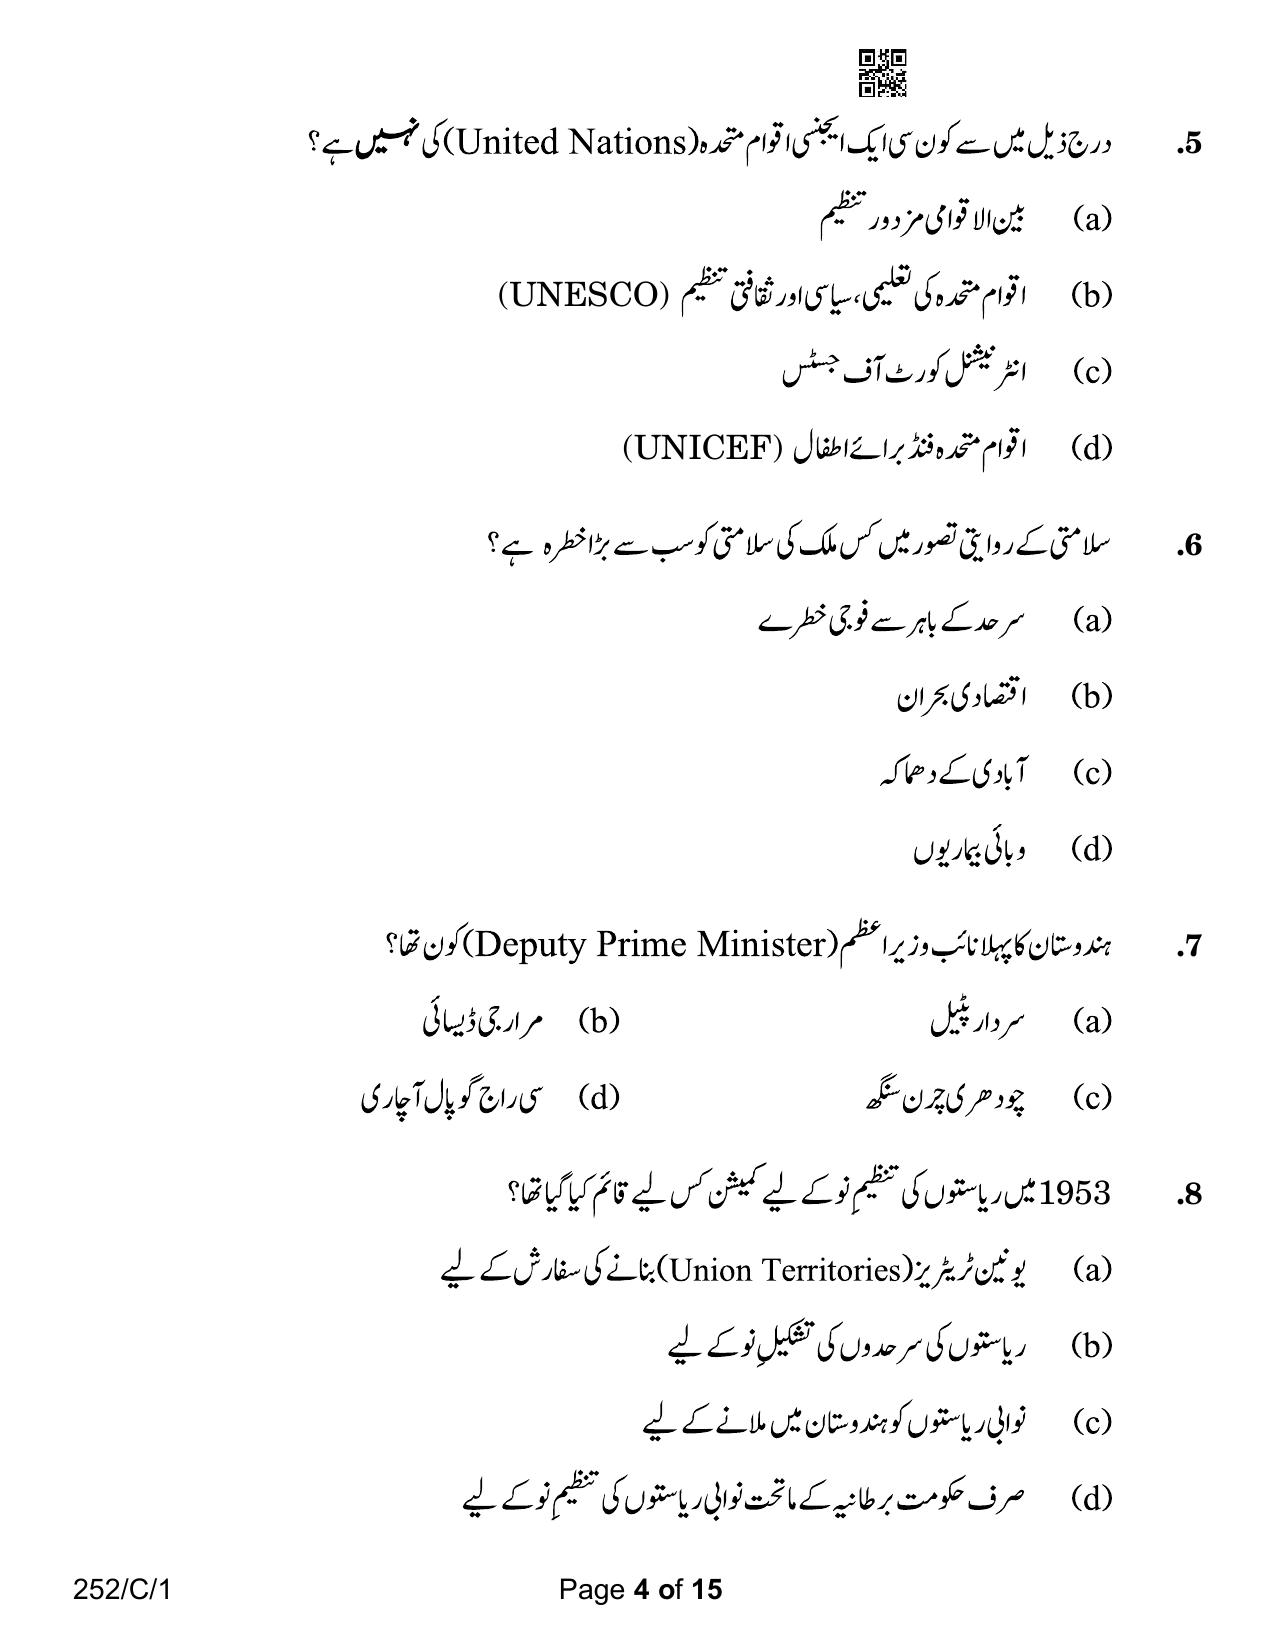 CBSE Class 12 252-1 Political Science Urdu Version 2023 (Compartment) Question Paper - Page 4